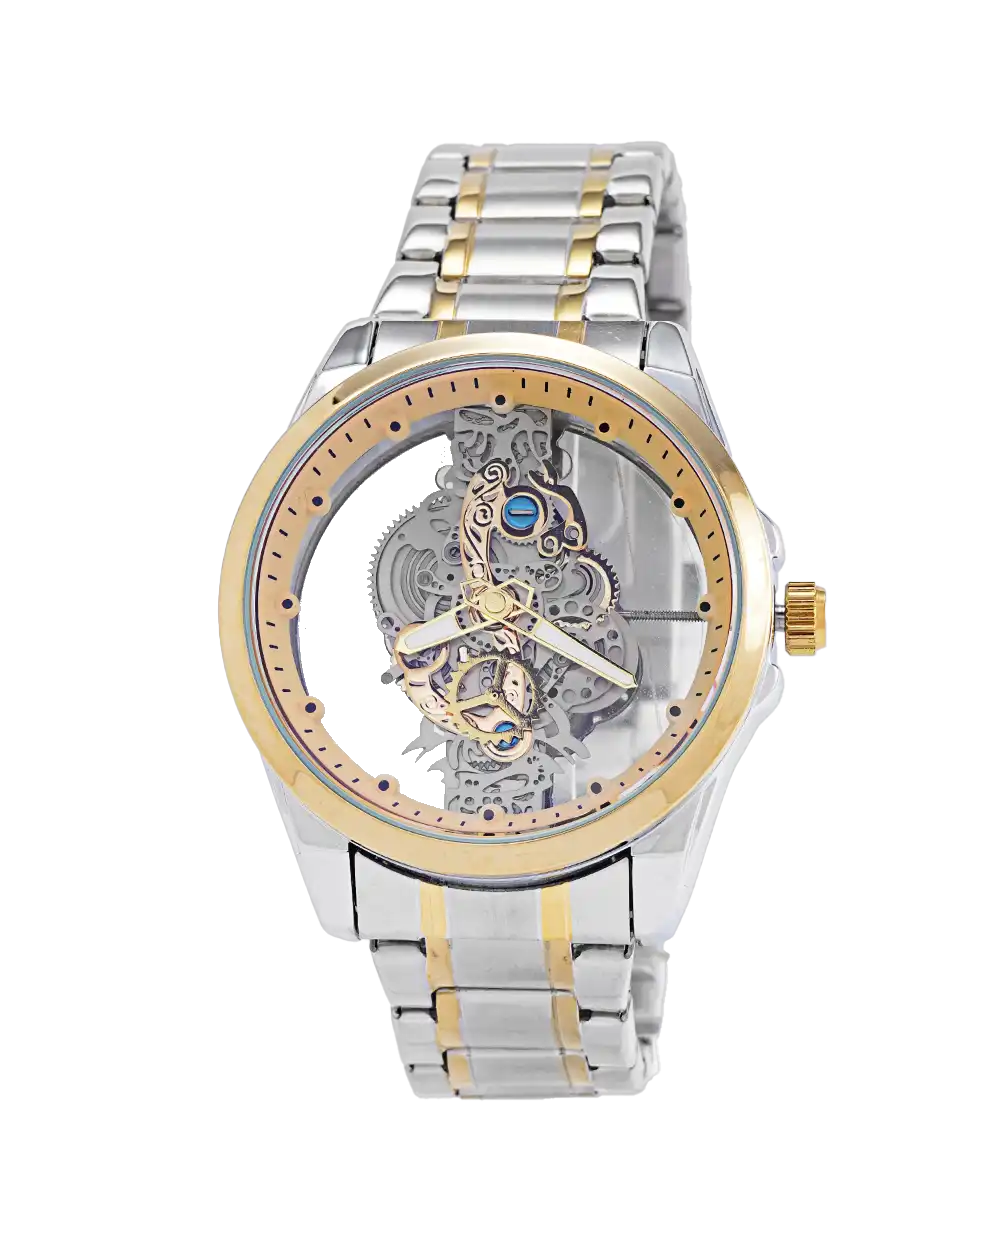 خرید ساعت مچی مردانه بین باند BIN BOND صفحه اسکلتون مدل 1738 نقره ای طلایی با بهترین قیمت به همراه جعبه ی ساعت و ارسال رایگان به سراسر ایران